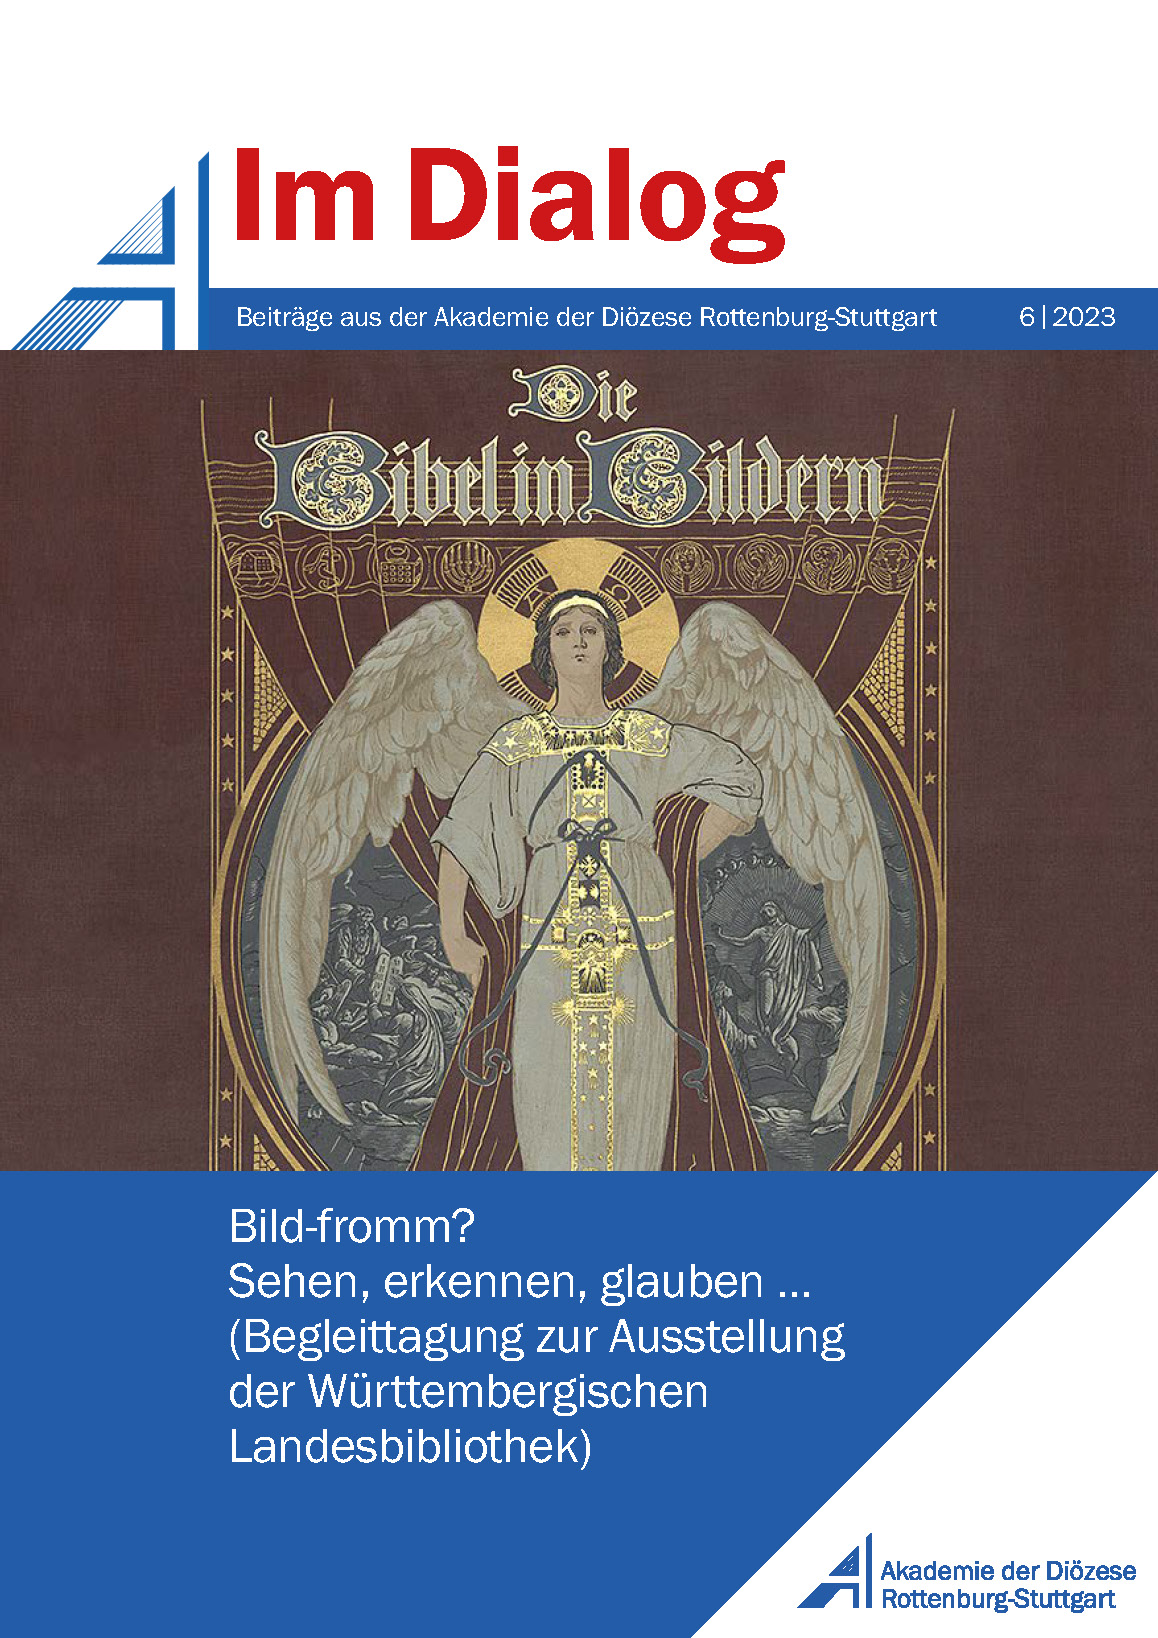                     Ansehen Bd. 6 (2023): Bild-fromm? Sehen, erkennen, glauben ... (Begleittagung zur Ausstellung der Württembergischen Landesbibliothek)
                